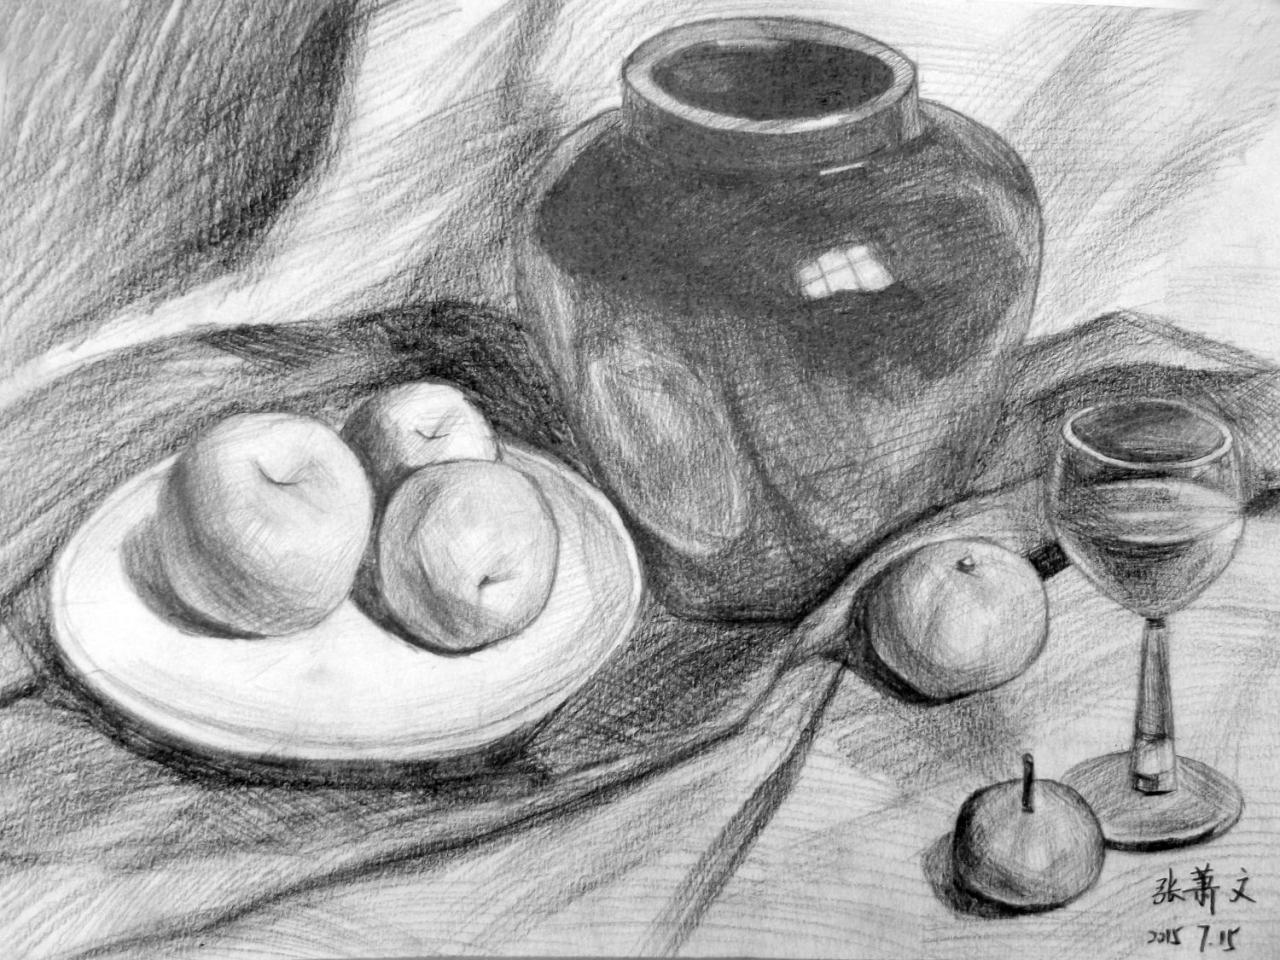 坛子、苹果、盘子、水杯 静物素描 张萧文画